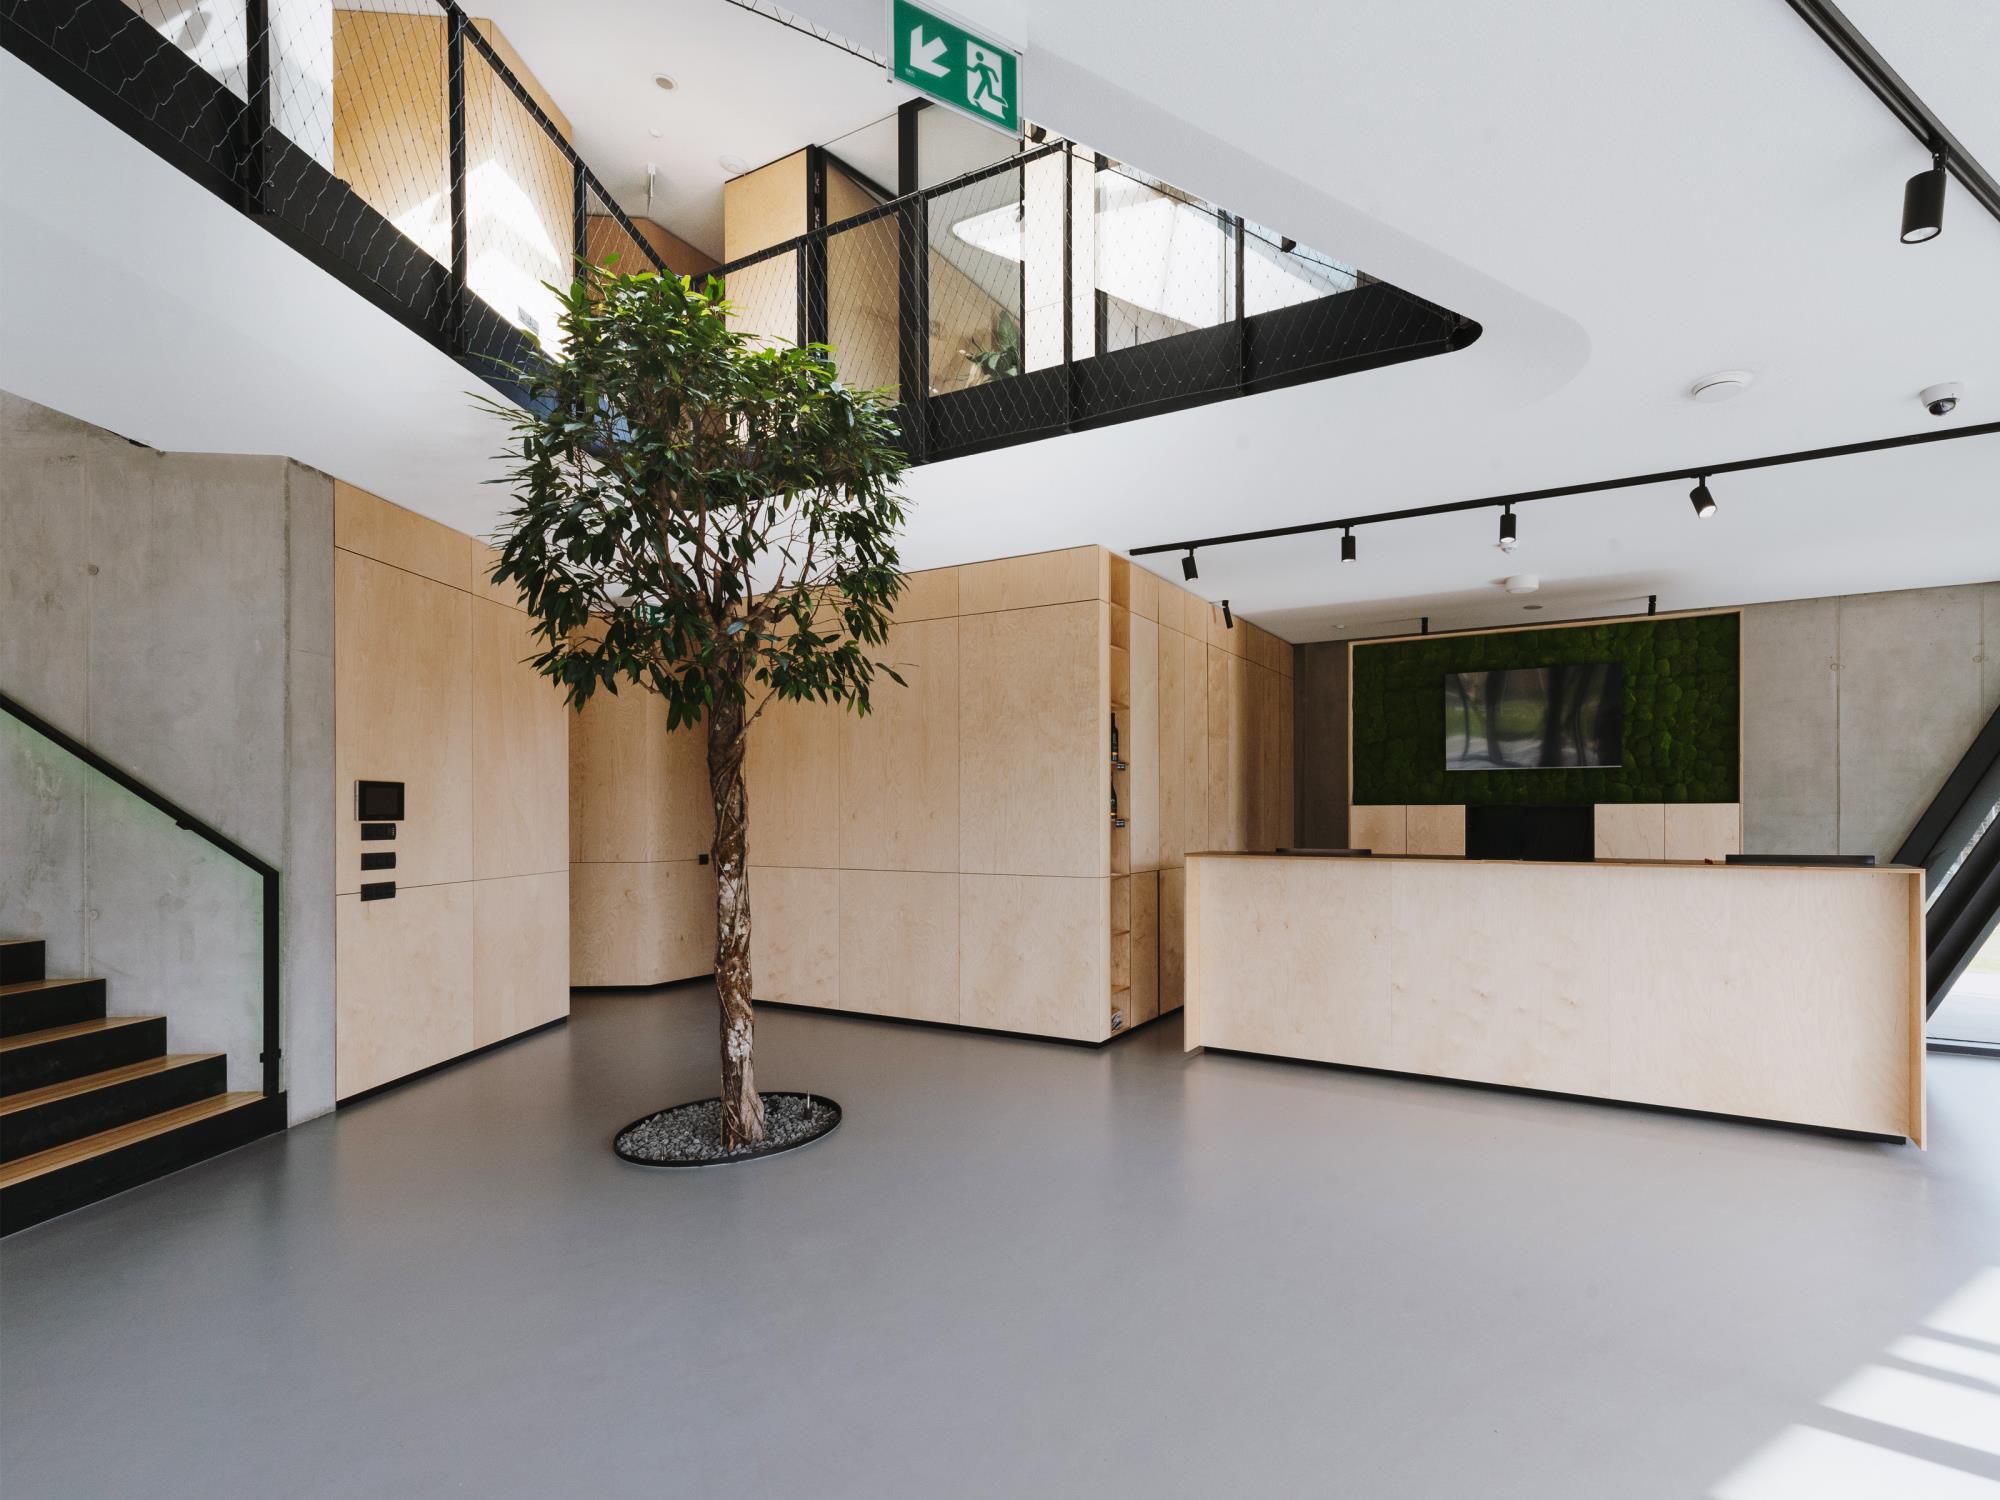 vstupná hala spolu s recepciou v administratívnej budove s detailom na živý strom symbolizujúci rast firmy